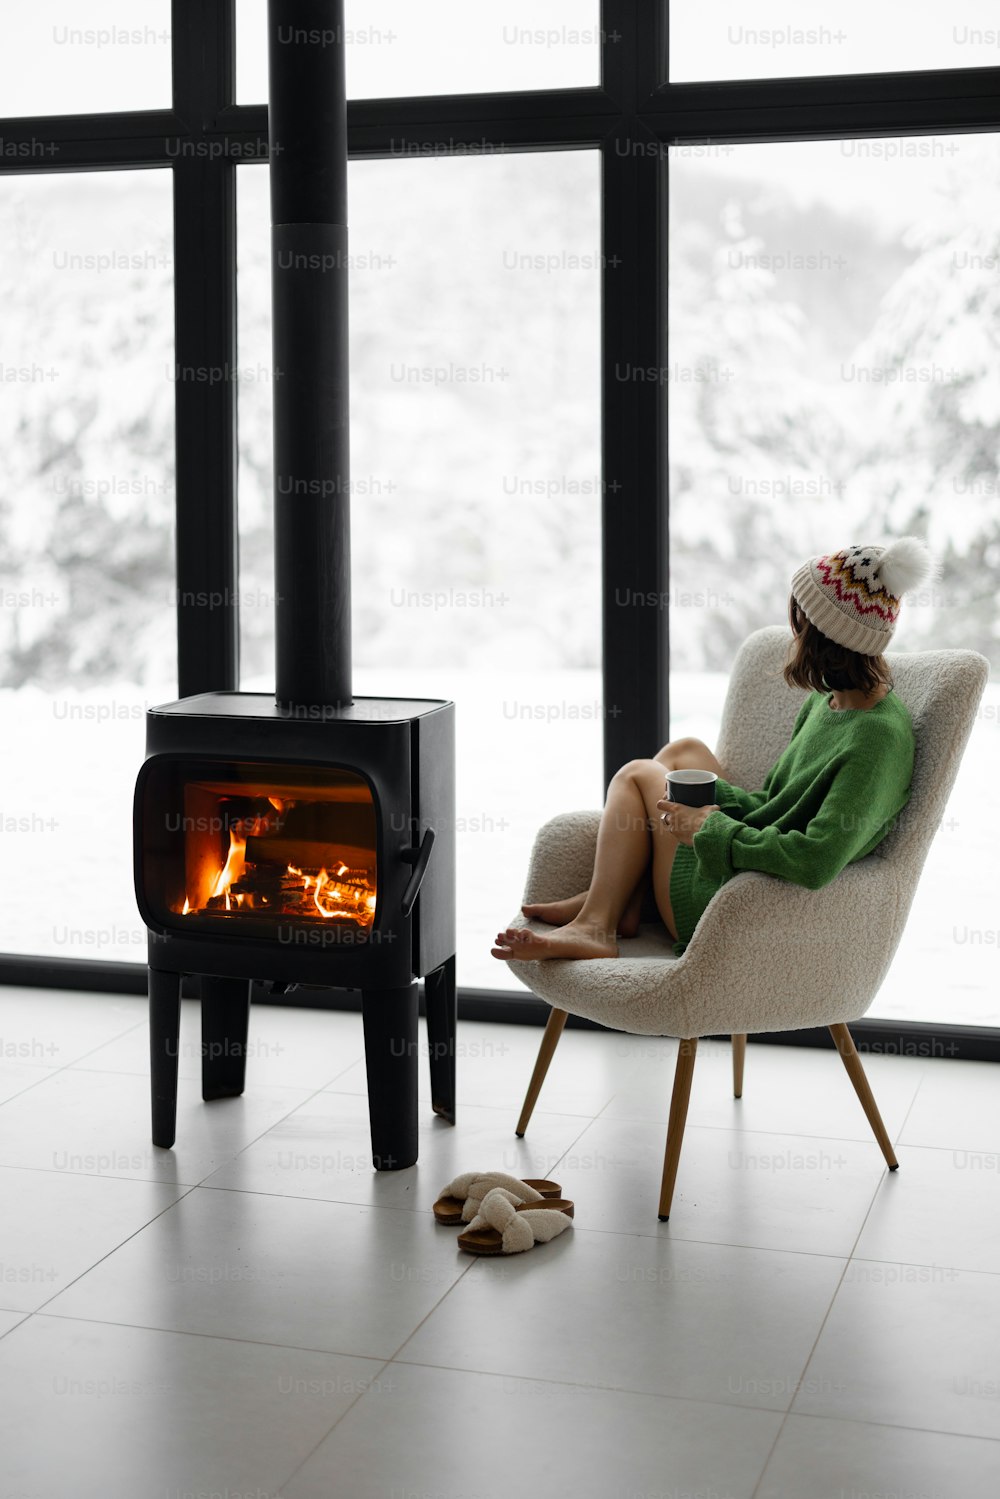 冬の間、自然の上にあるモダンな家の暖炉のそばの椅子にカップを持って座っている女性。冬の気分と自宅での快適さのコンセプト。帽子と緑のセーターを着た女の子